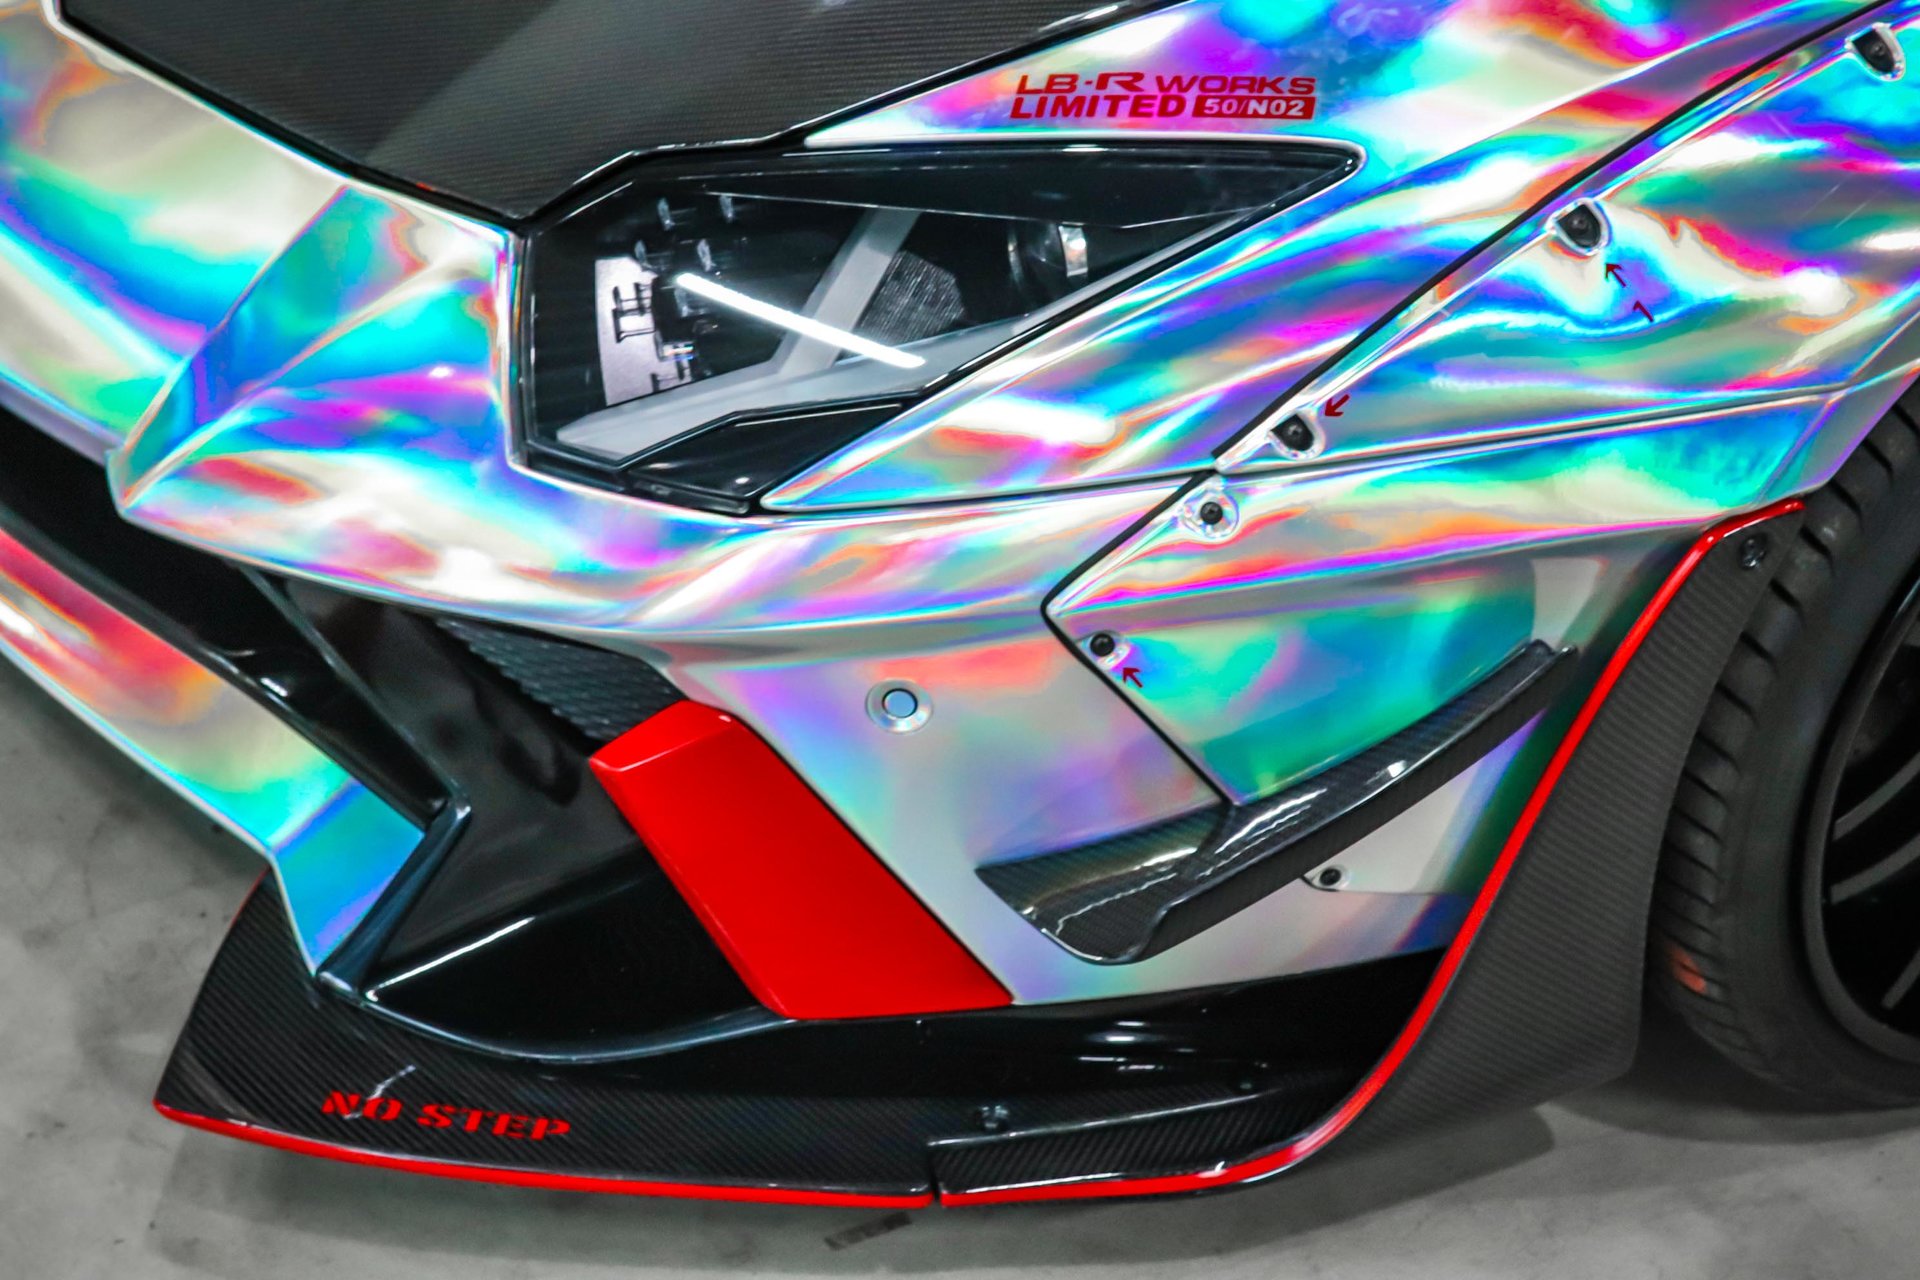 Lamborghini Aventador - Rainbow Chrome wrap | WrapStyle